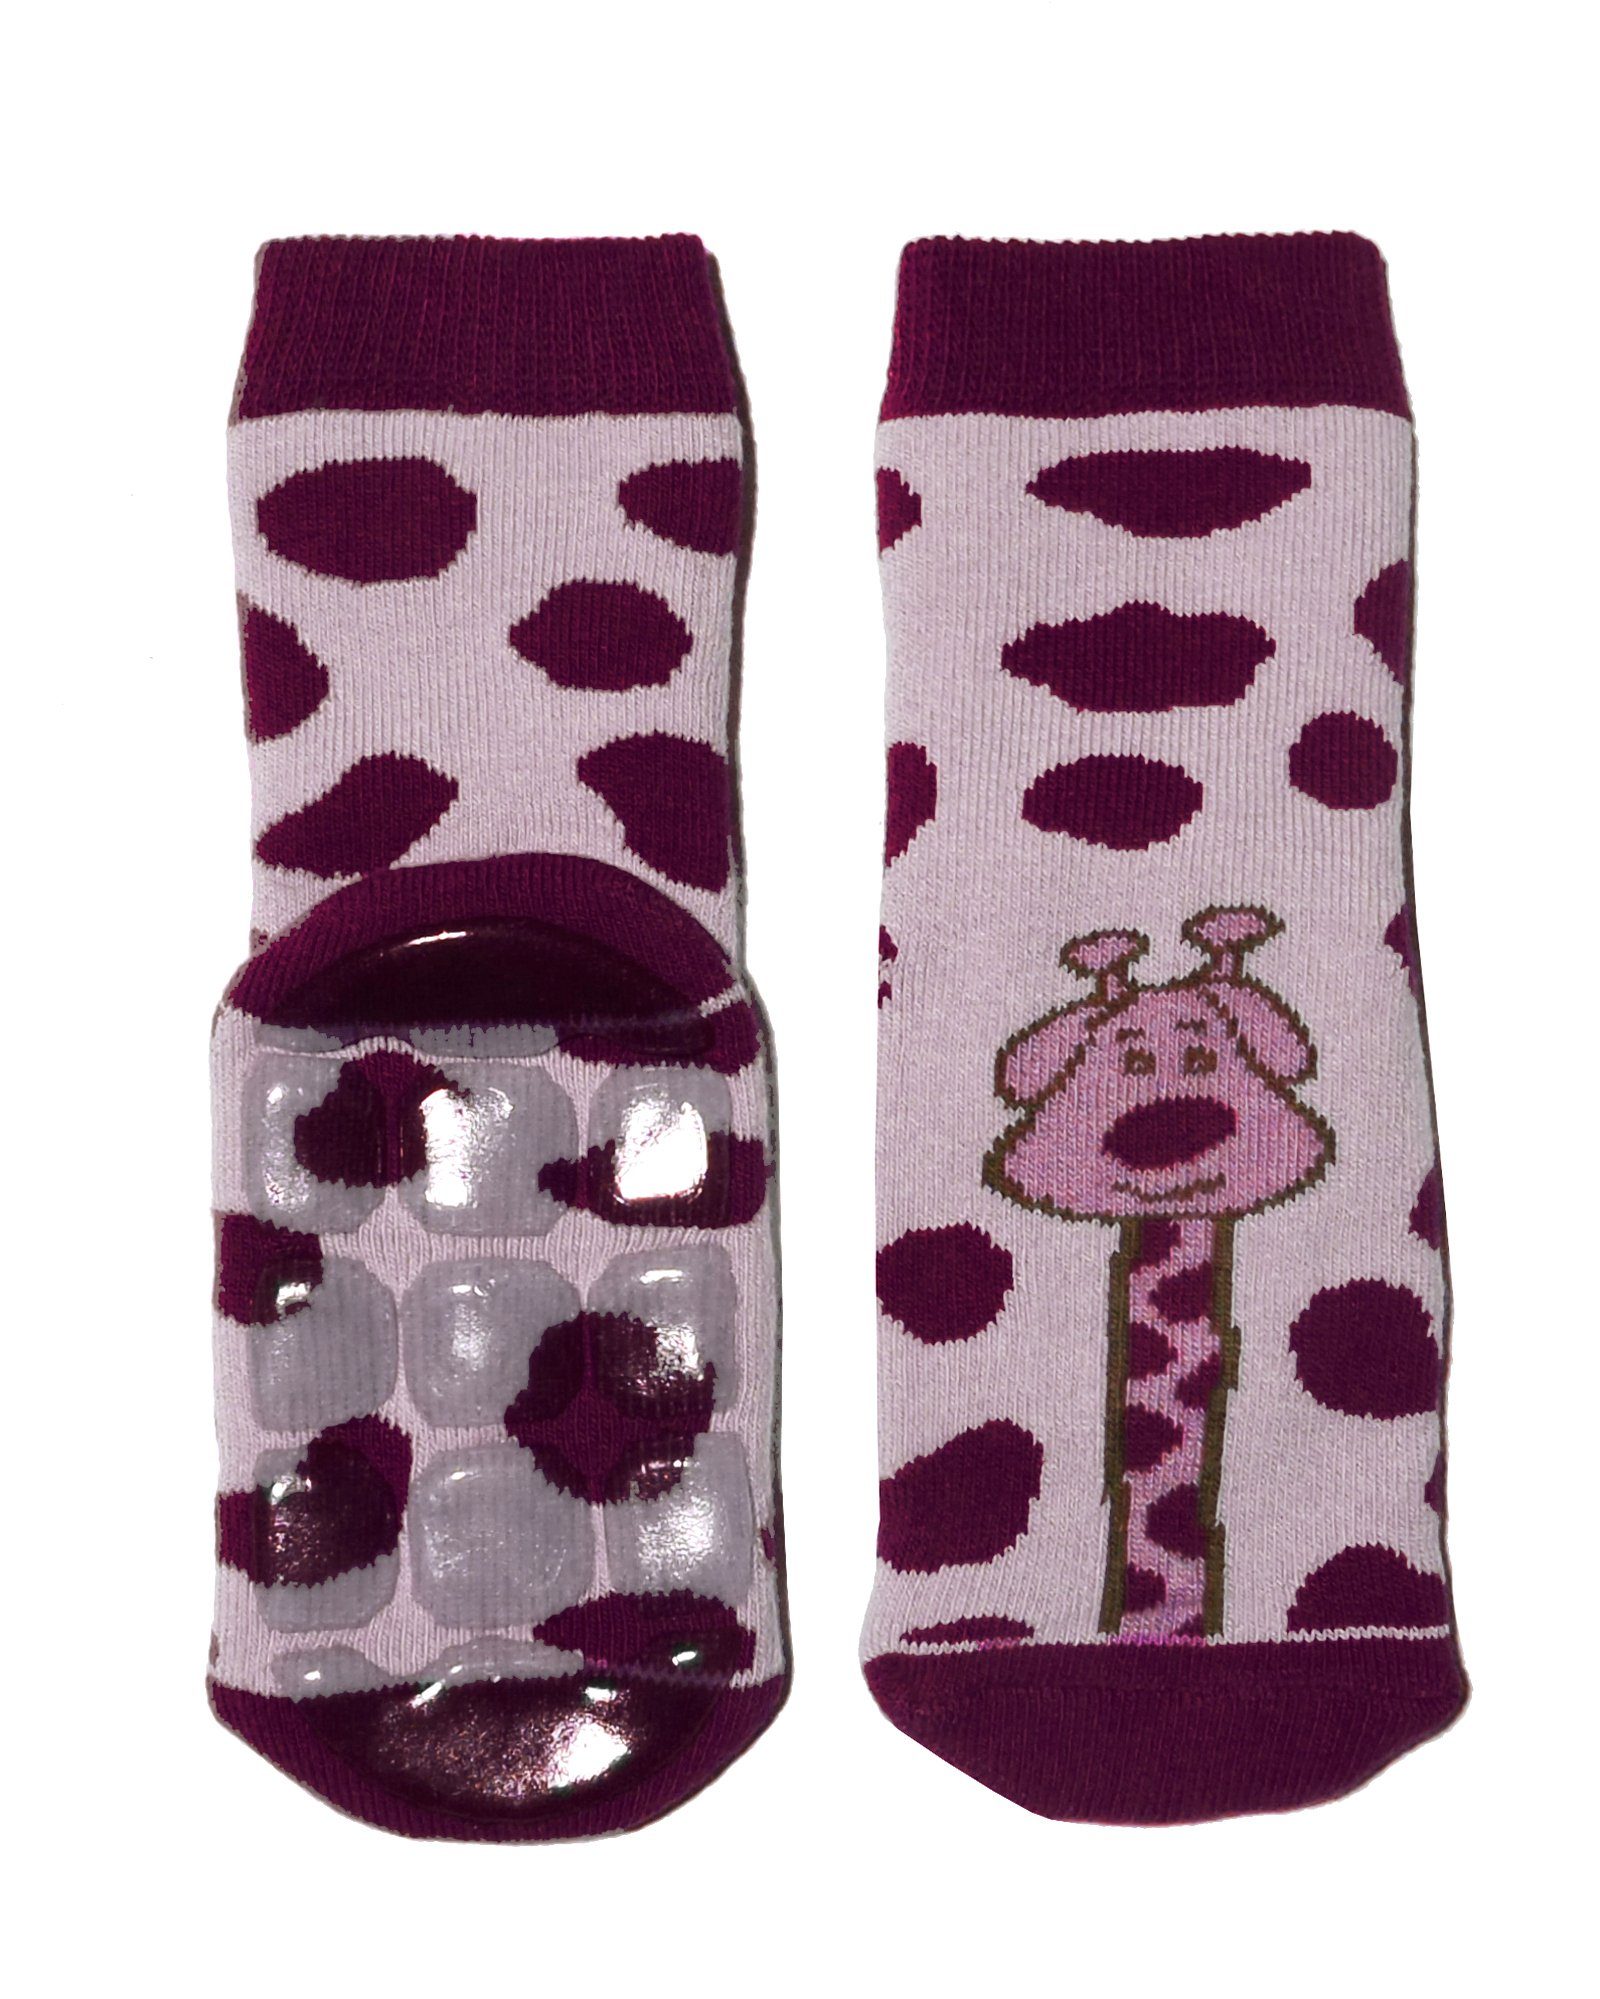 WERI SPEZIALS Strumpfhersteller GmbH ABS-Socken Kinder ABS-Socken für Mädchen Jungs >Ferne Reise!